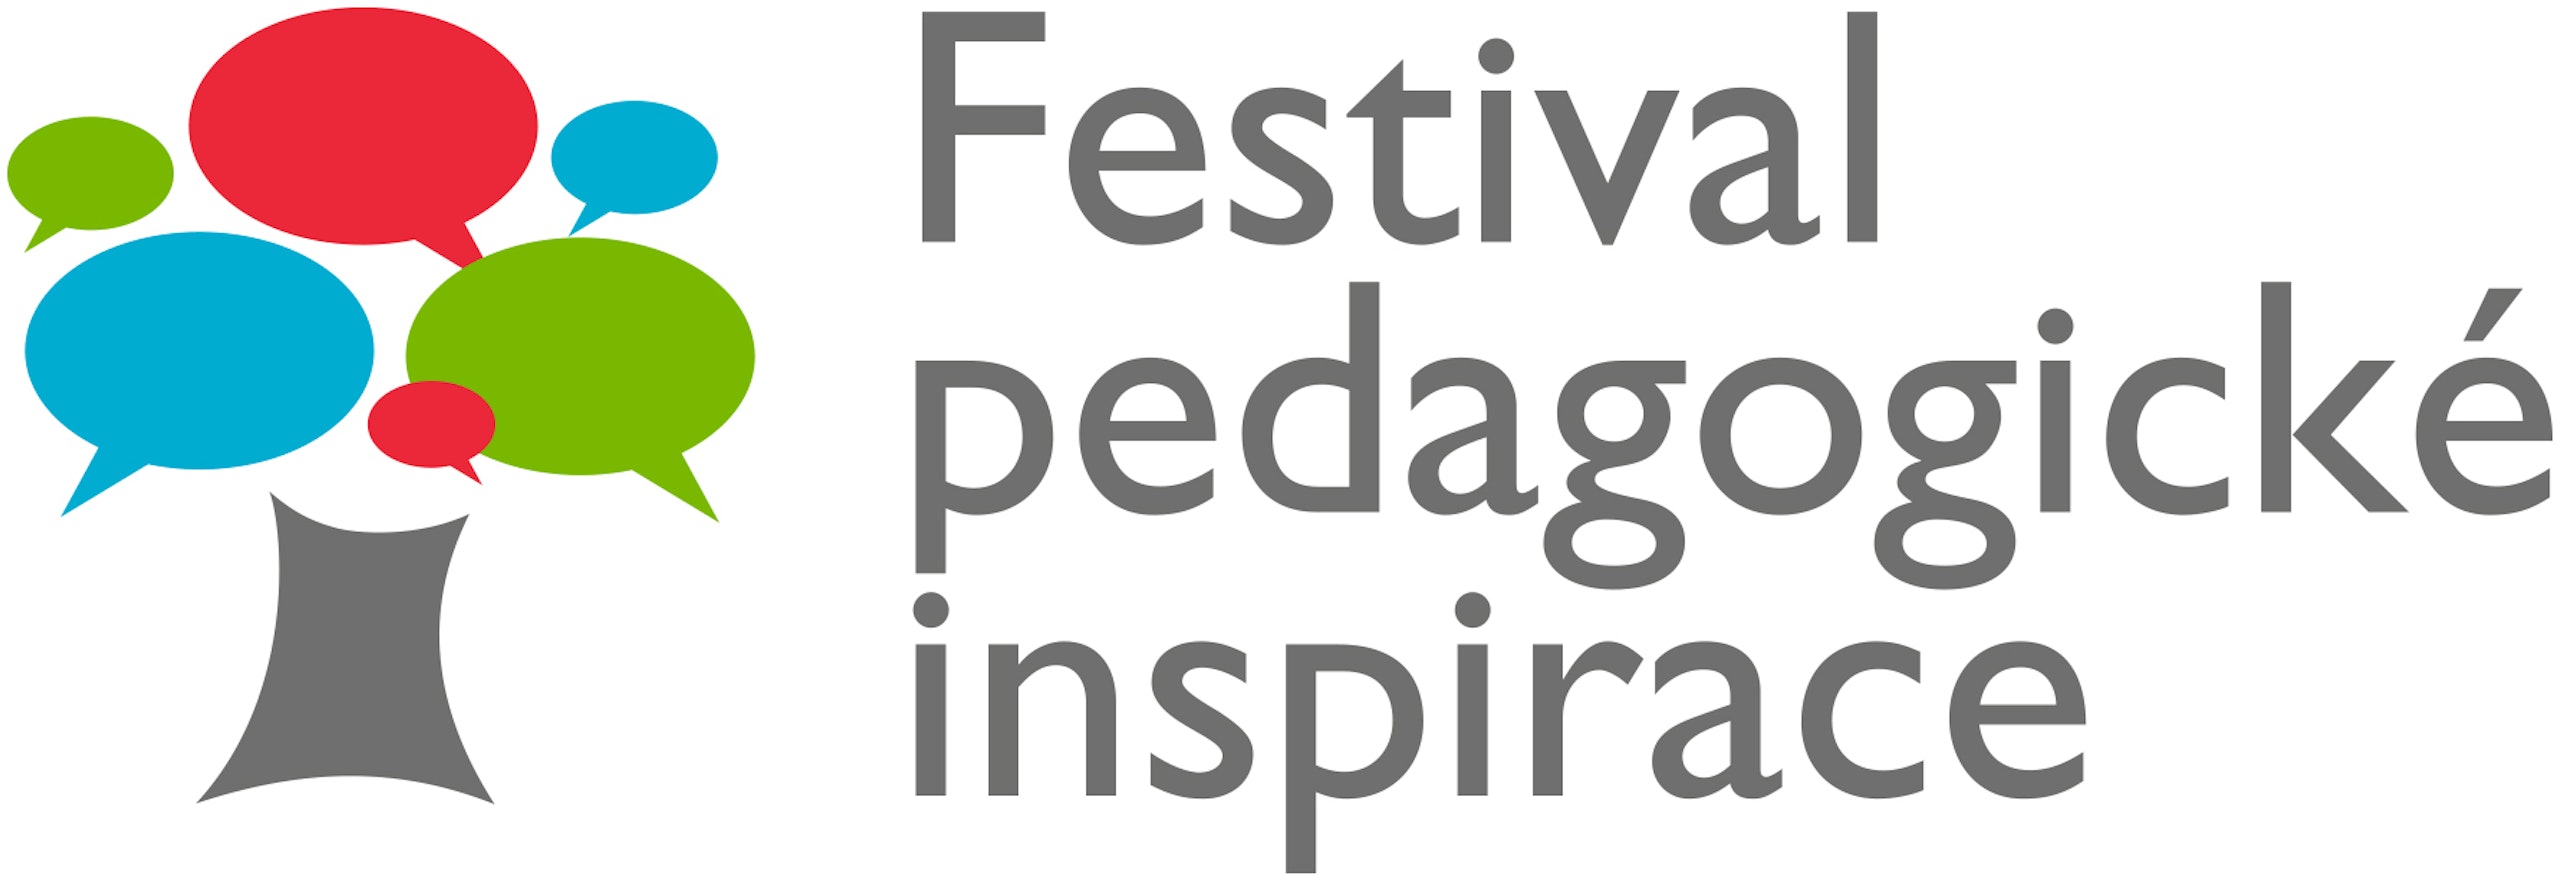 Festival pedagogické inspirace Didactica Magna